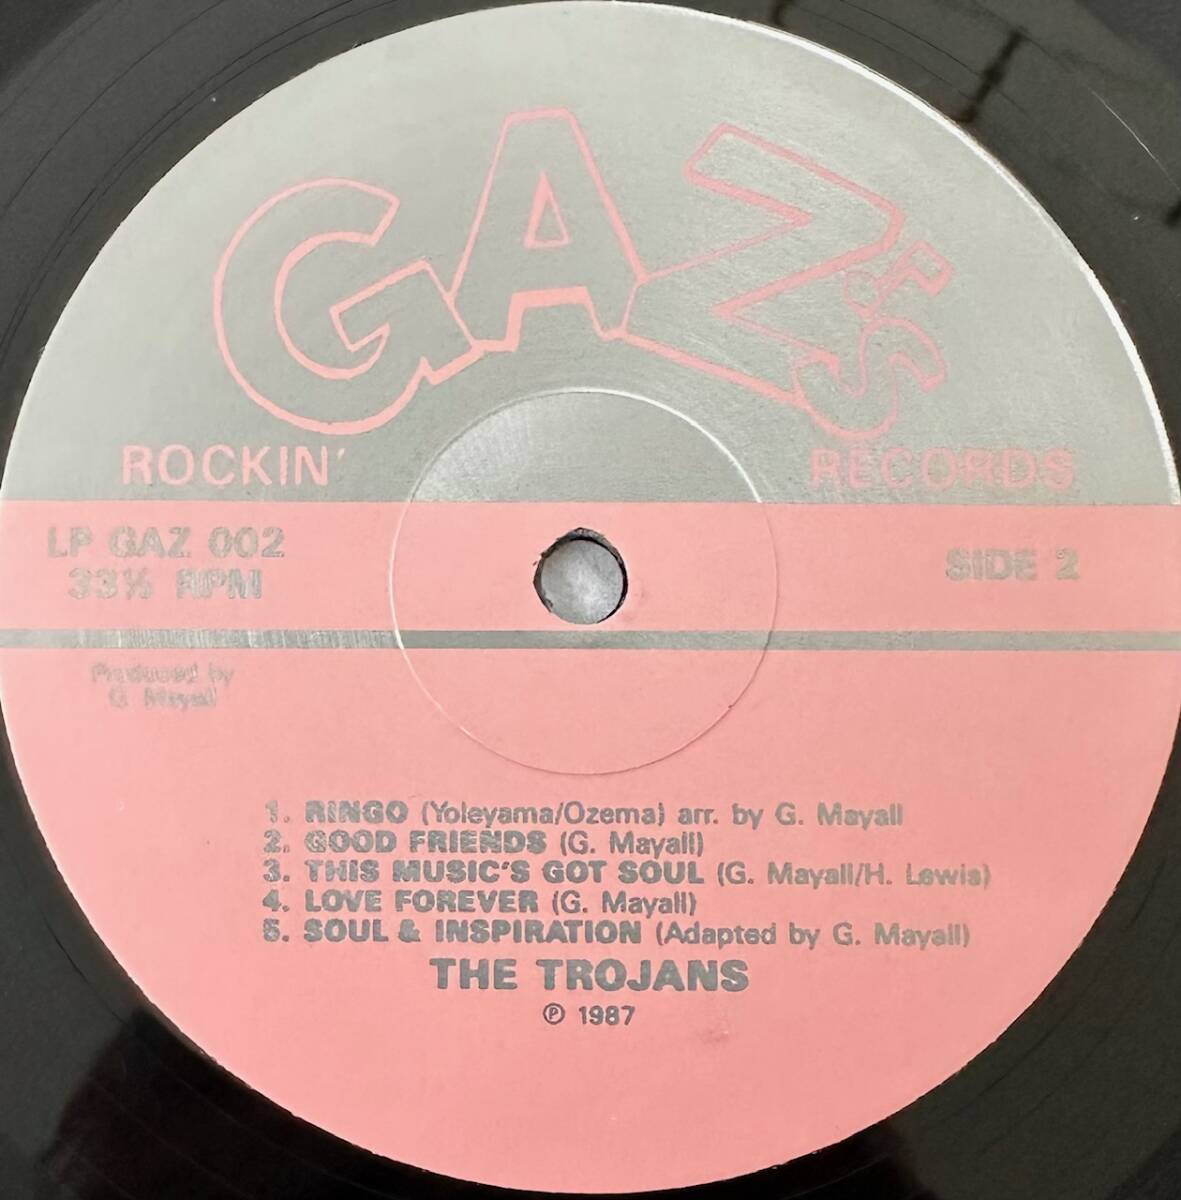 #1987 год оригинал UK запись THE TROJANS - ALA-SKA 12~LP LP GAZ 002 GAZ*S Rockin* Records